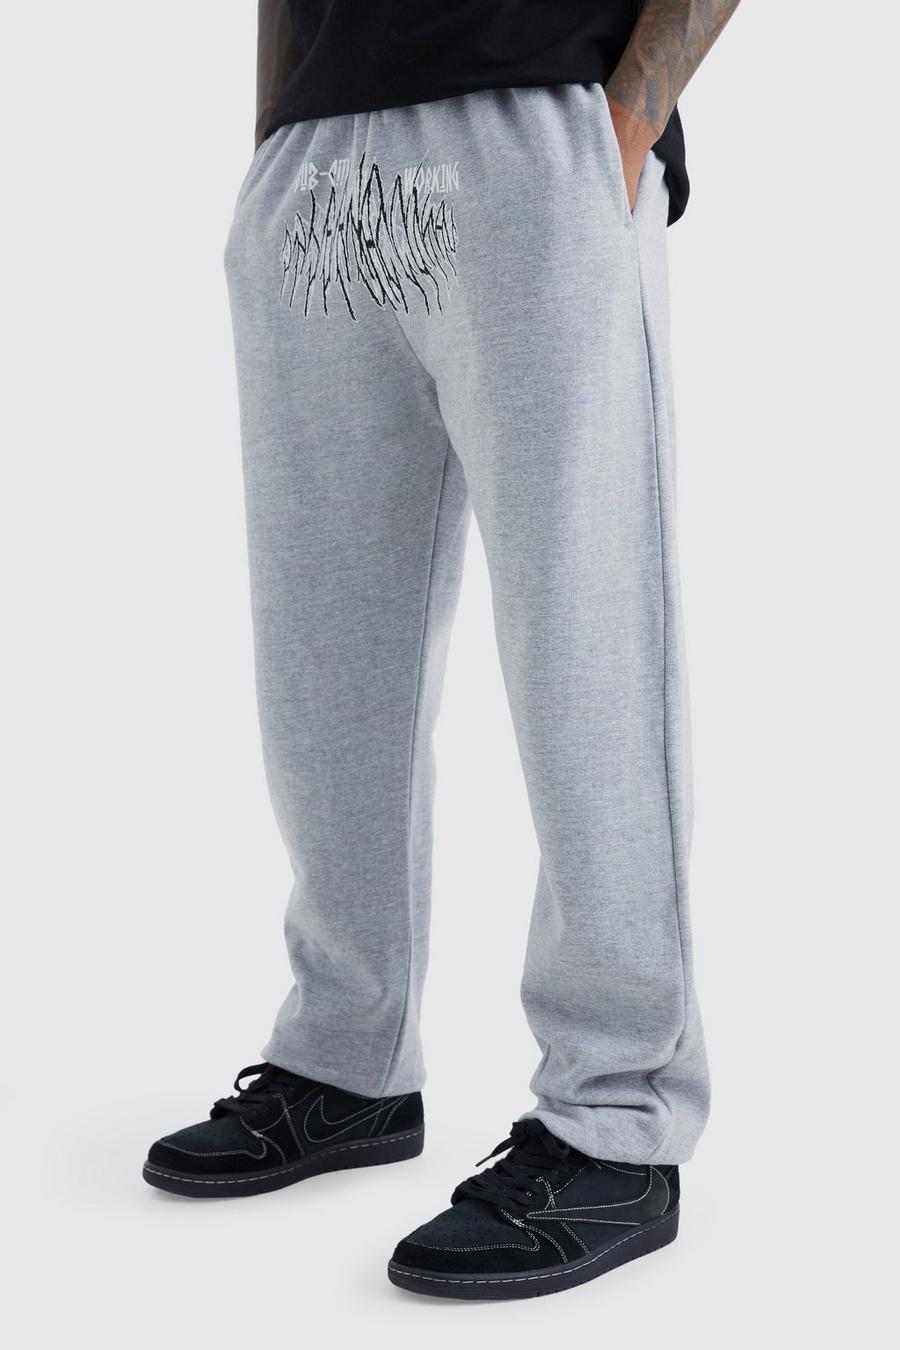 Pantalón deportivo con estampado gráfico de ciudad secundaria, Grey marl